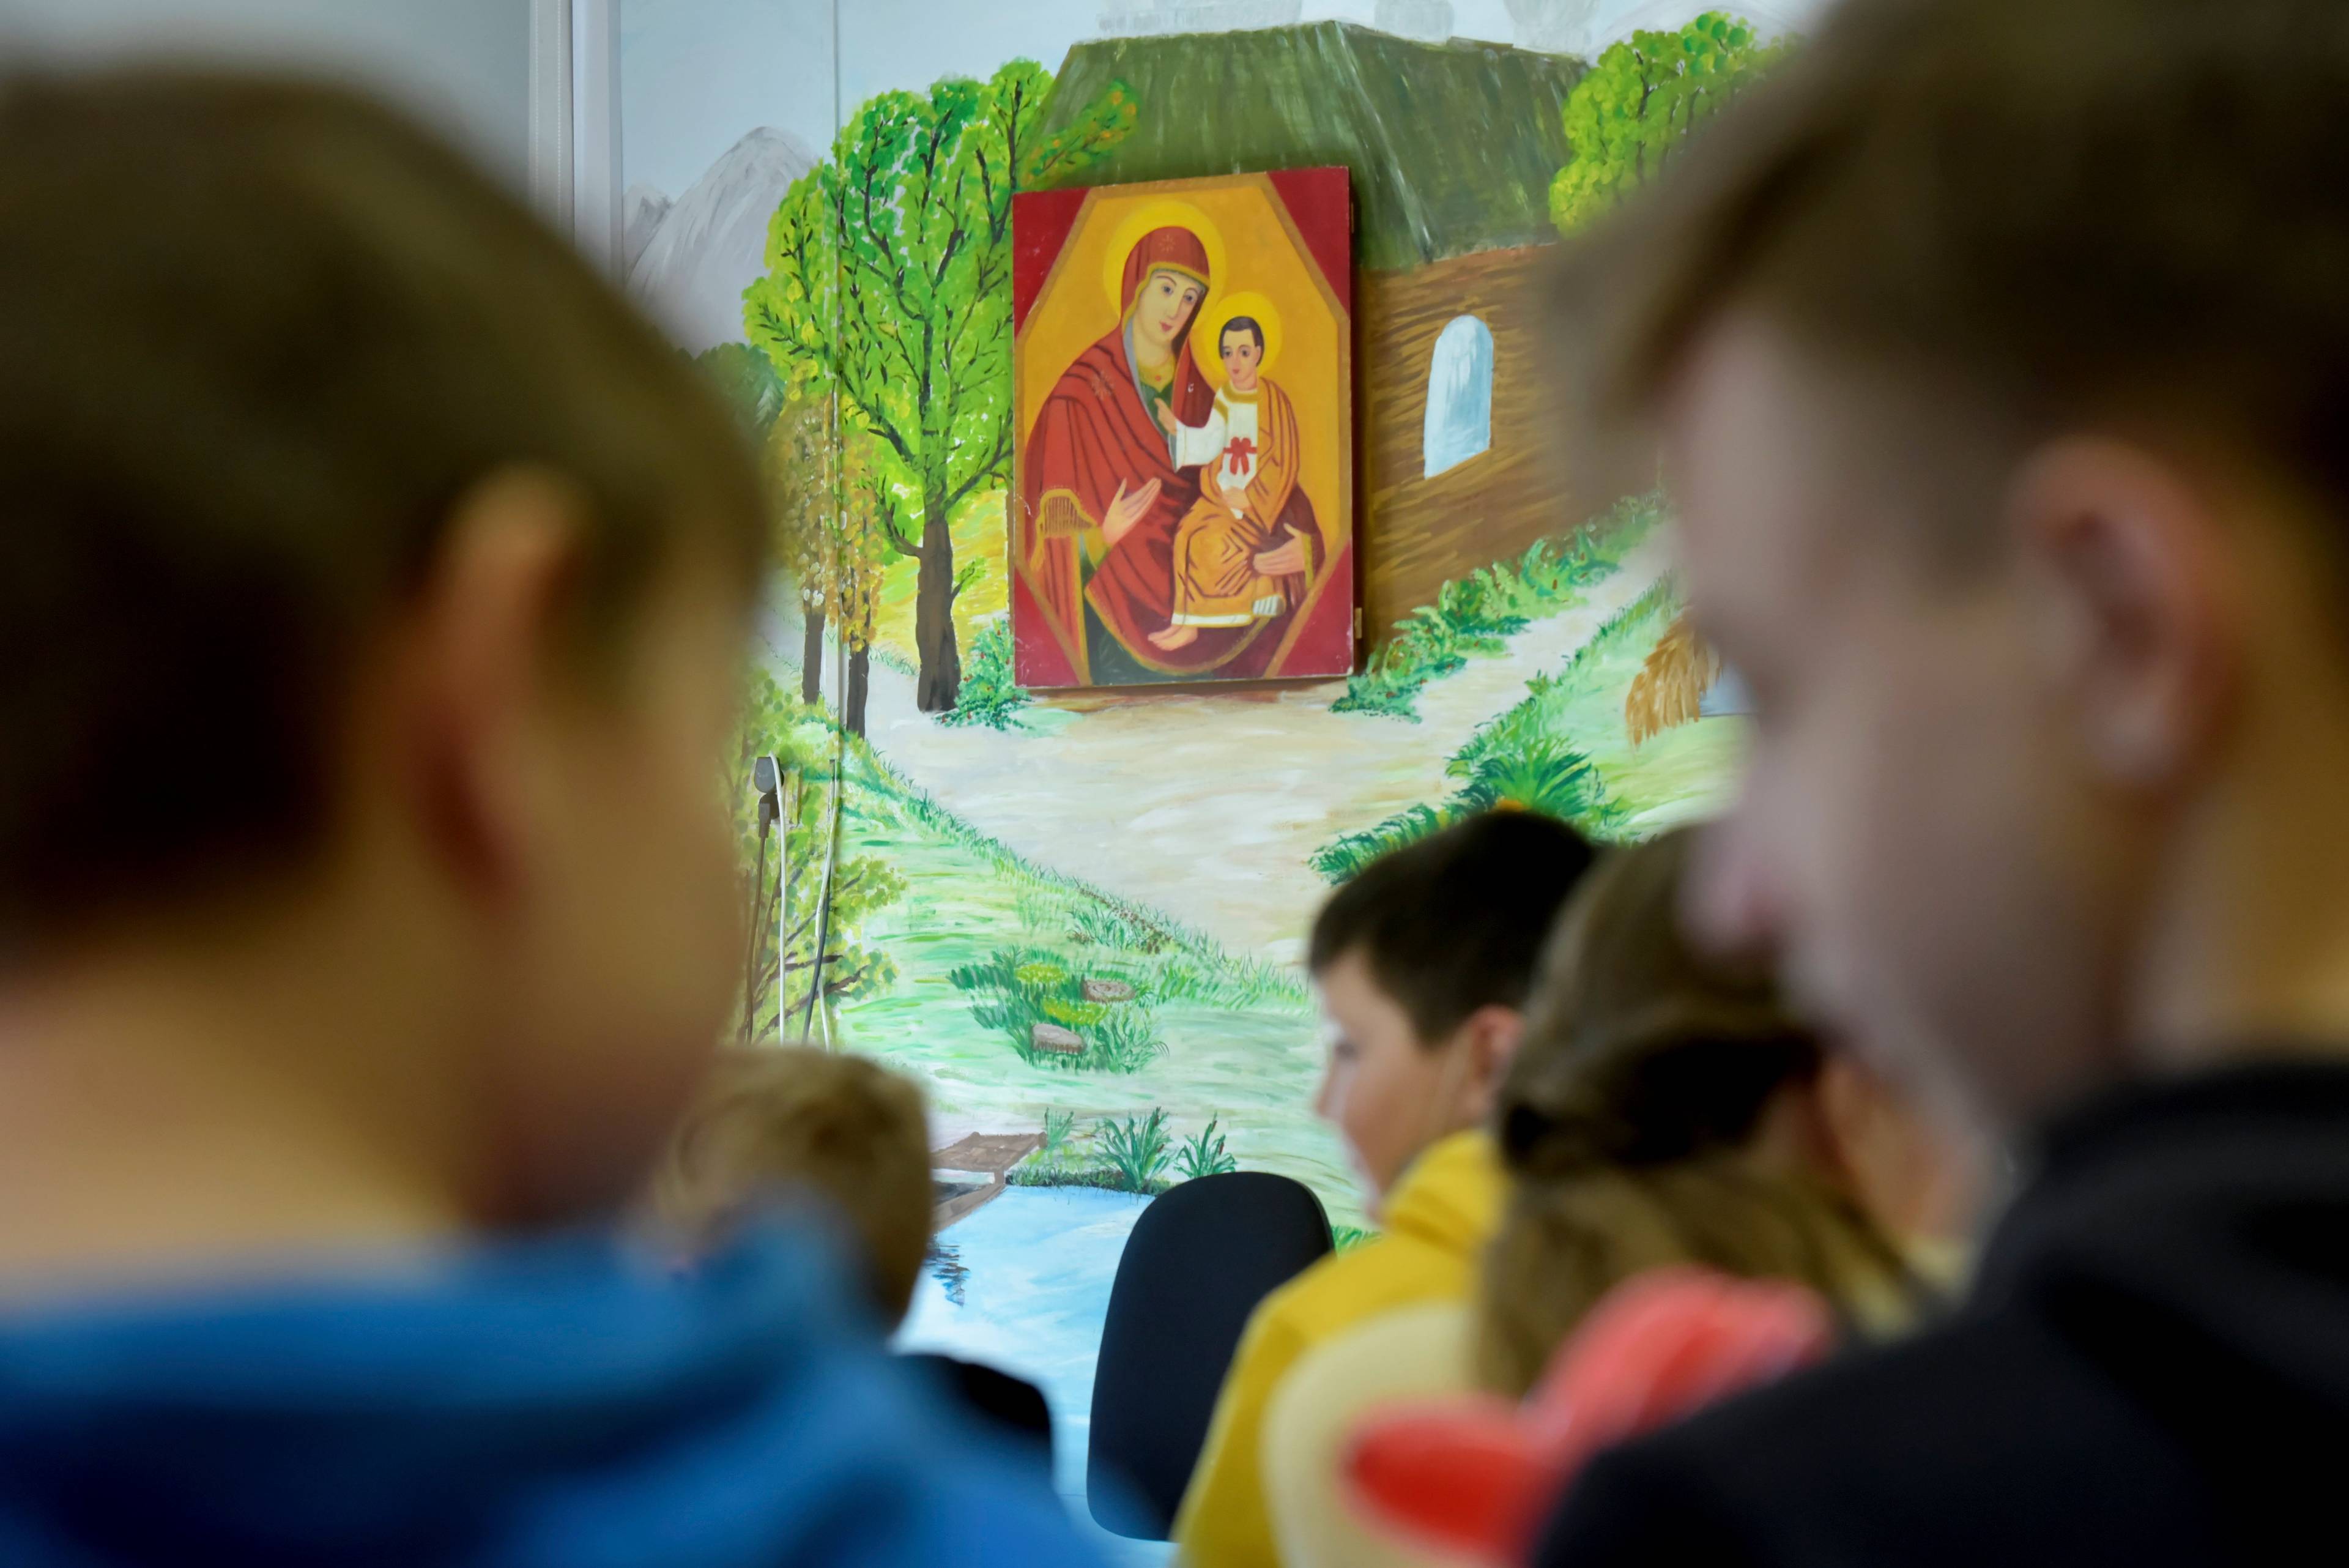 Obraz Matki Boskiej z Dzieciątkiem na ścianie szkolnej klasy. Na pierwszym planie nieostre twarze uczniów.